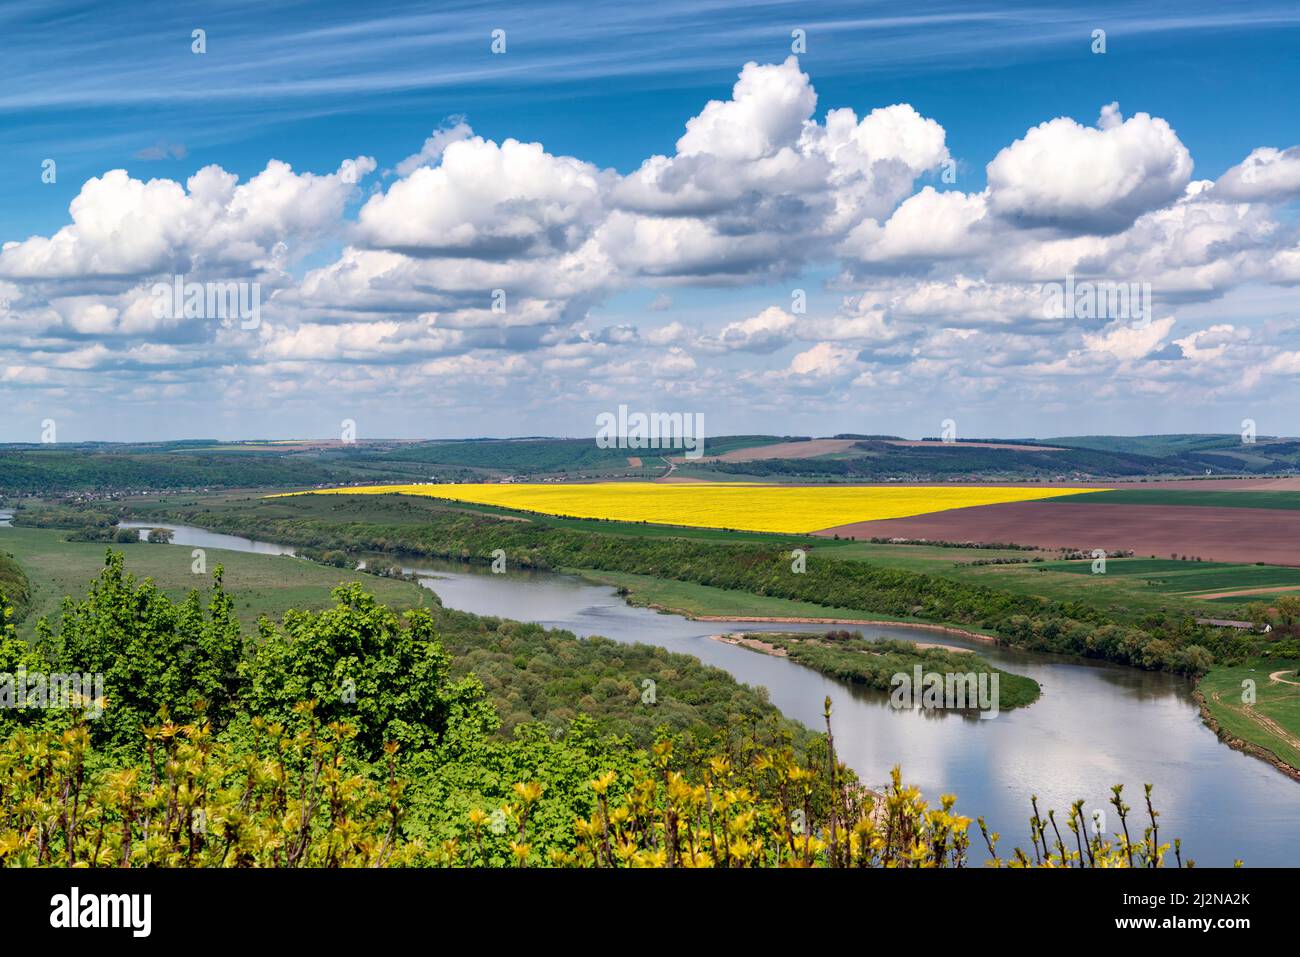 Bellissimo paesaggio rurale nella parte occidentale dell'Ucraina con il fiume Dniester, campi agricoli e bellissimo cielo di primavera Foto Stock